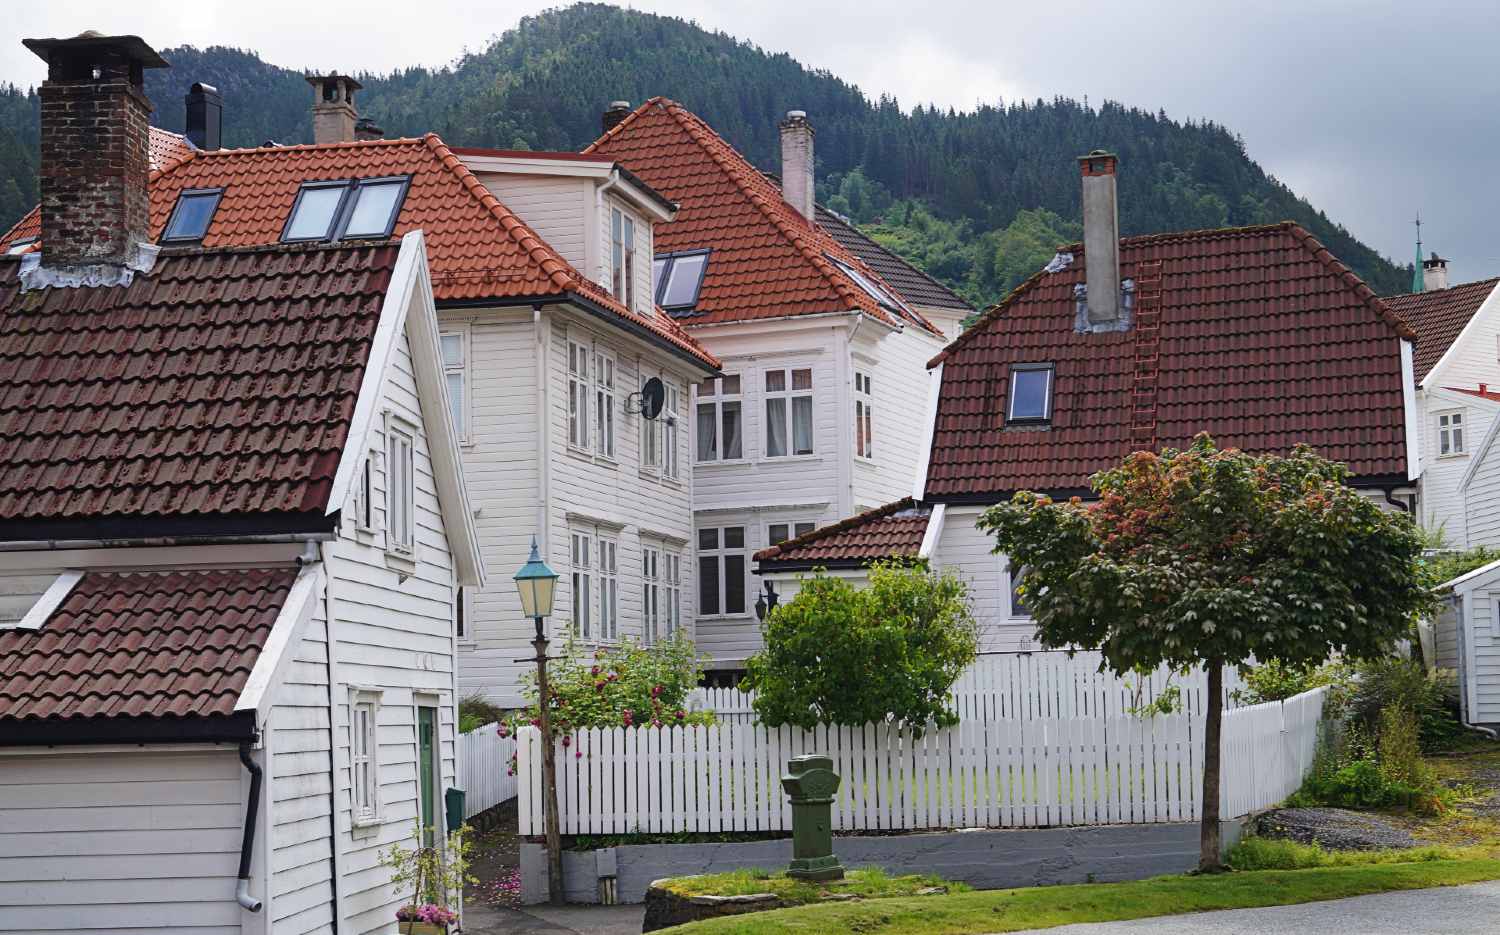 Bydeler og nabolag i Bergen sentrum - Sandviken